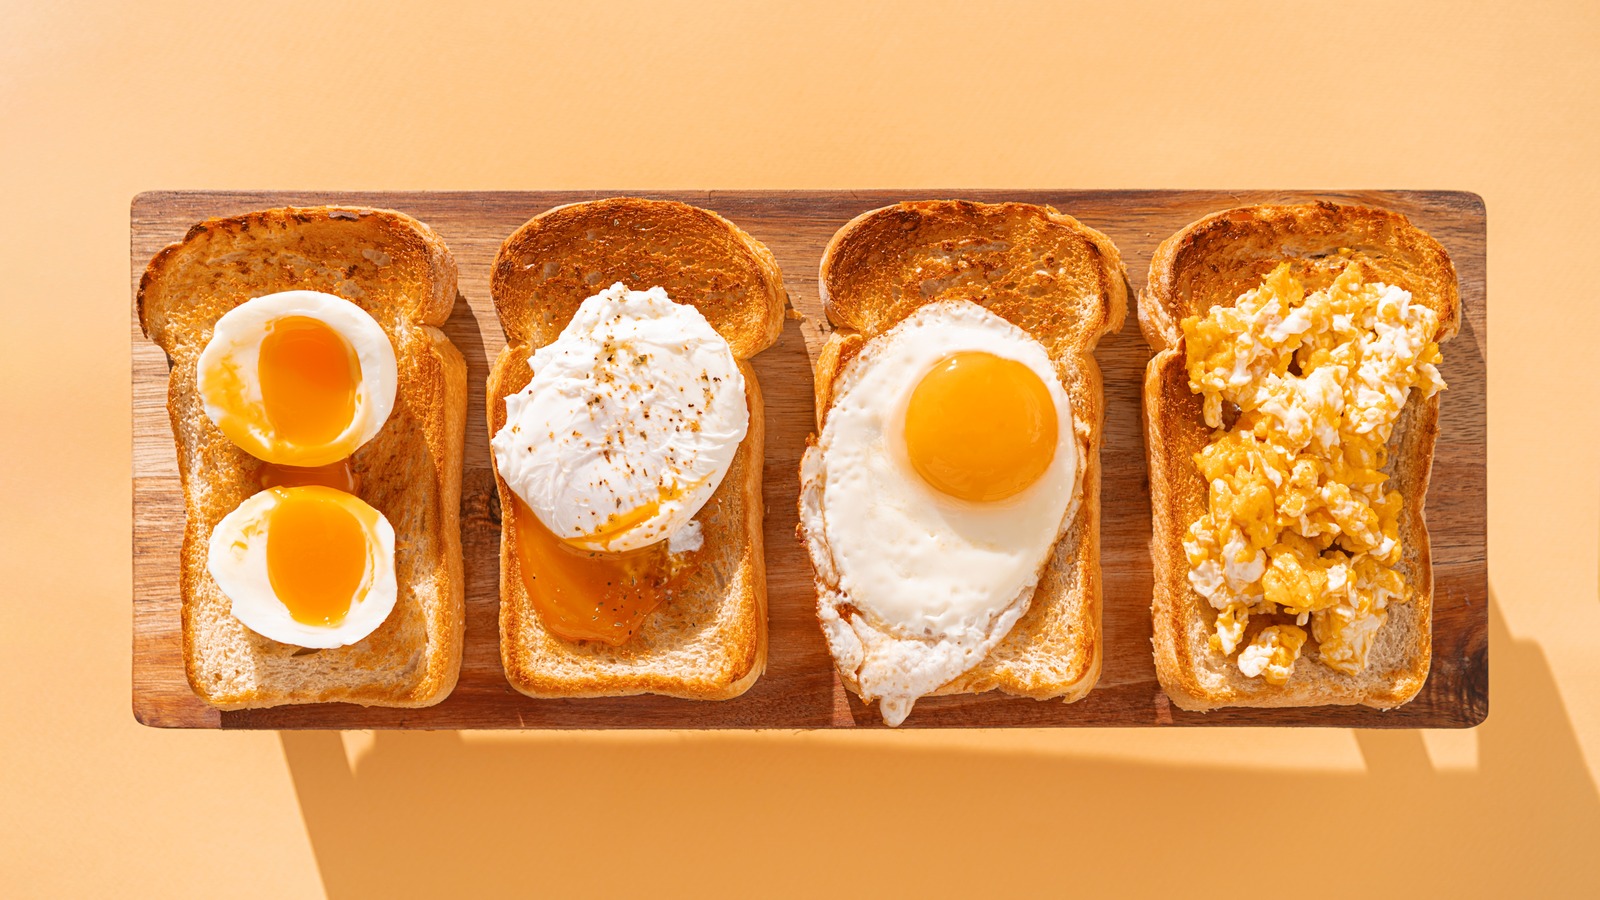 Tips for Seasoning Eggs - Sauder's Eggs